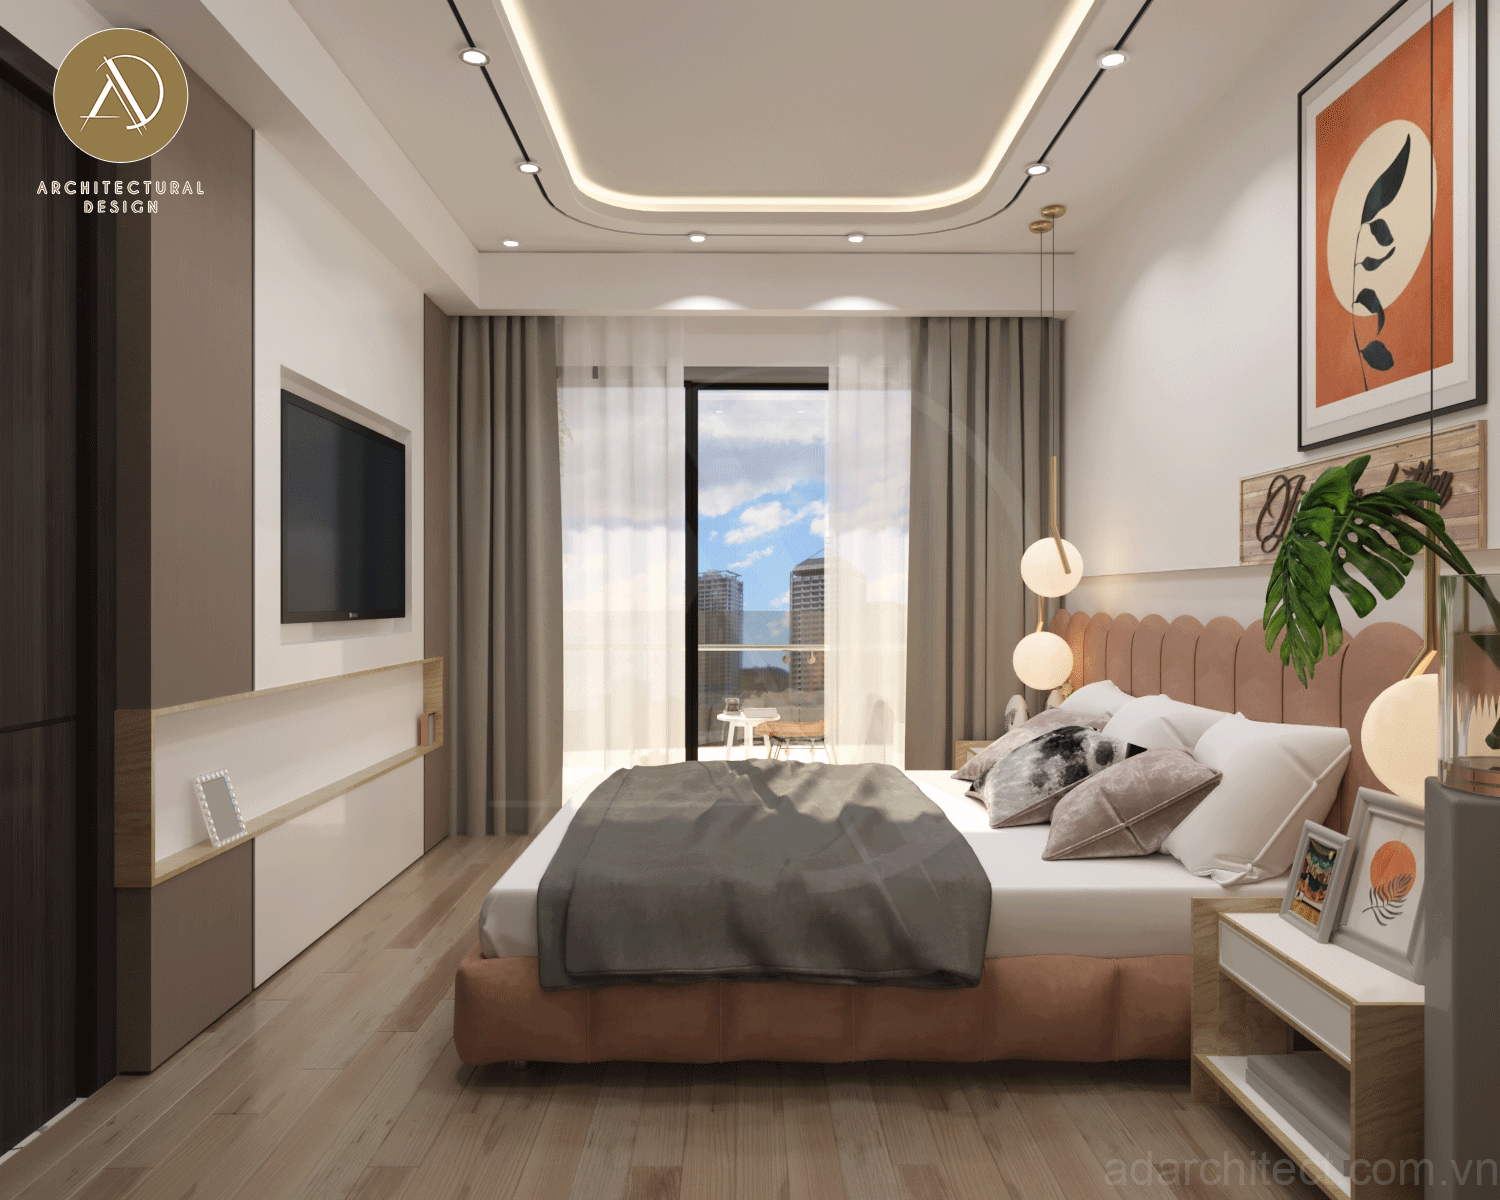 kệ tivi được thiết kế âm tường đơn giản, gọn đẹp làm mở rộng không gian phòng ngủ hơn